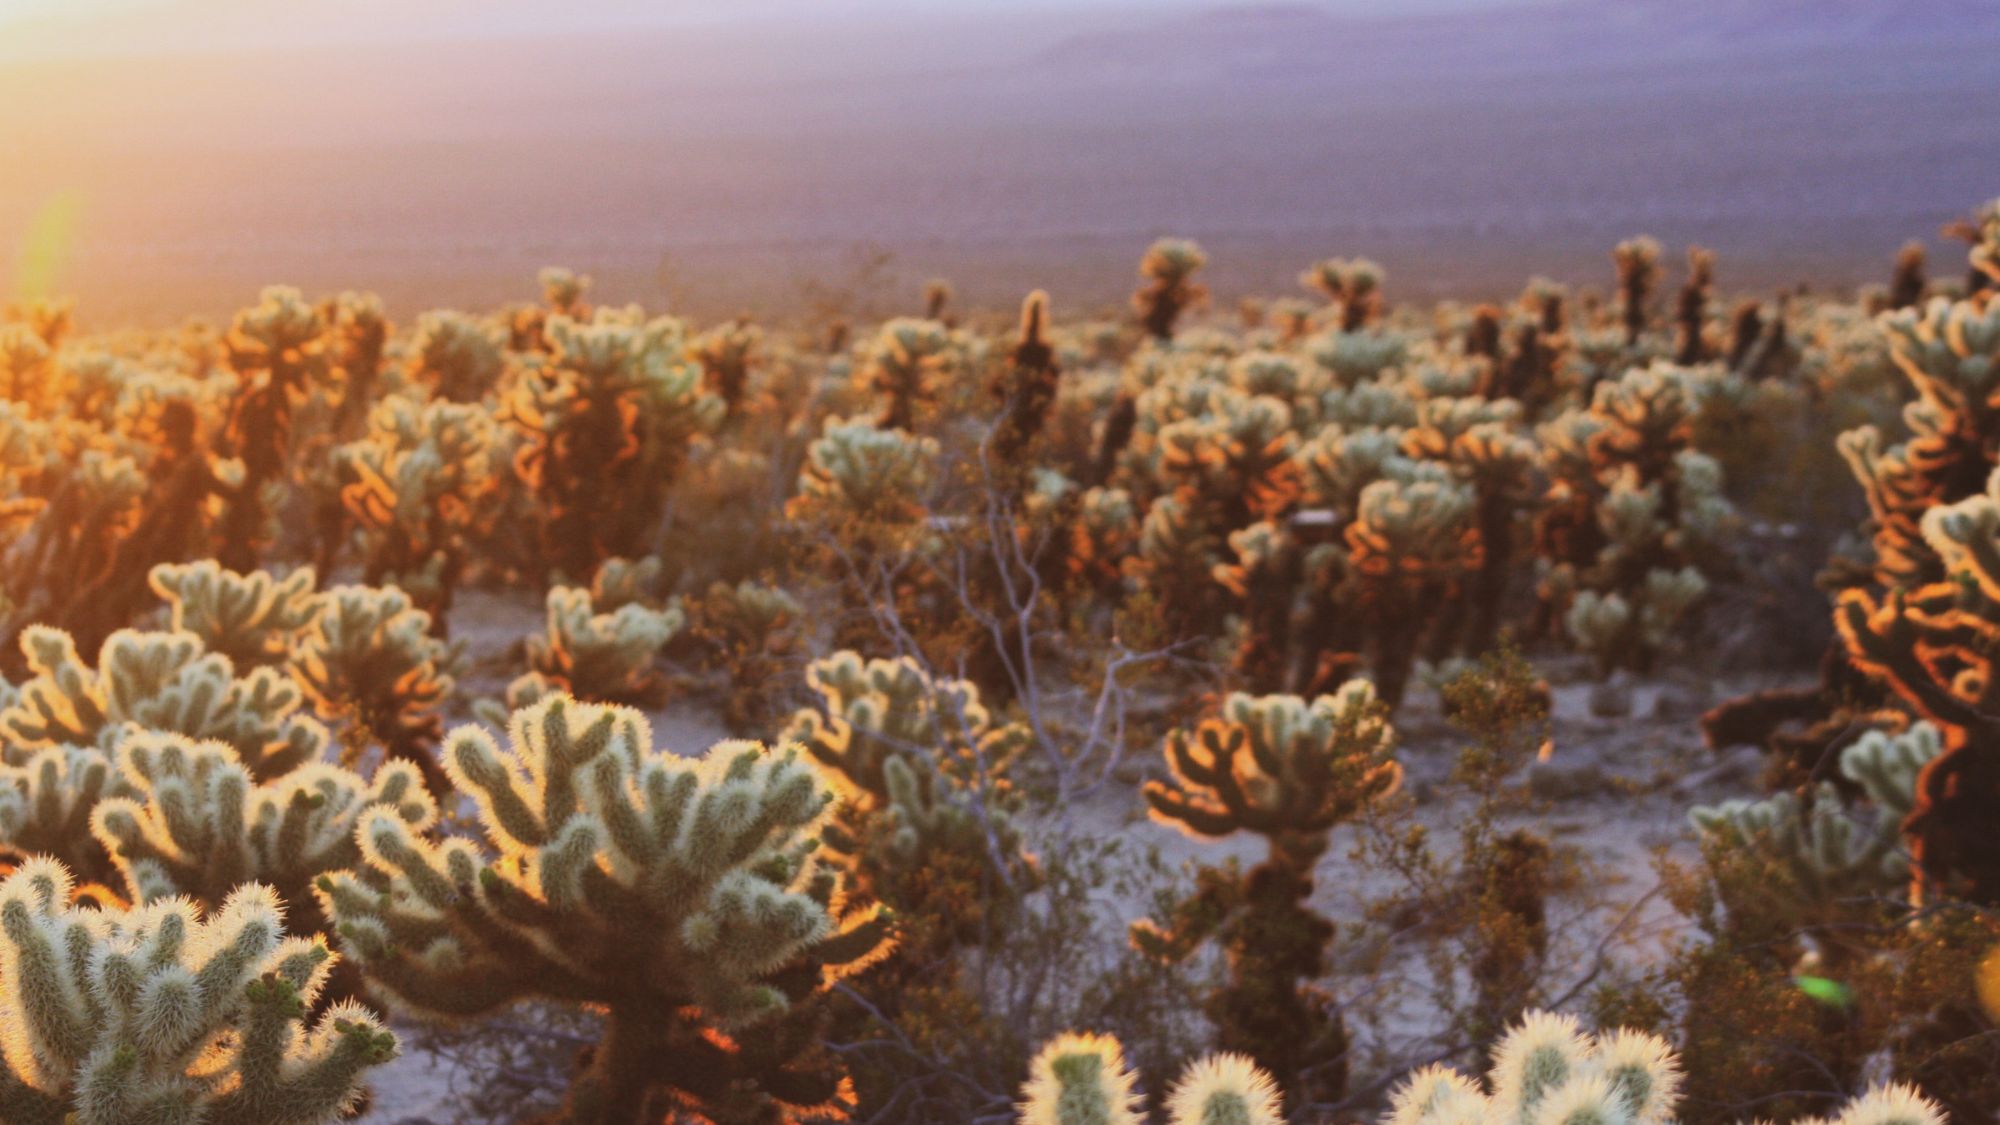 Sunset photo of desert plants